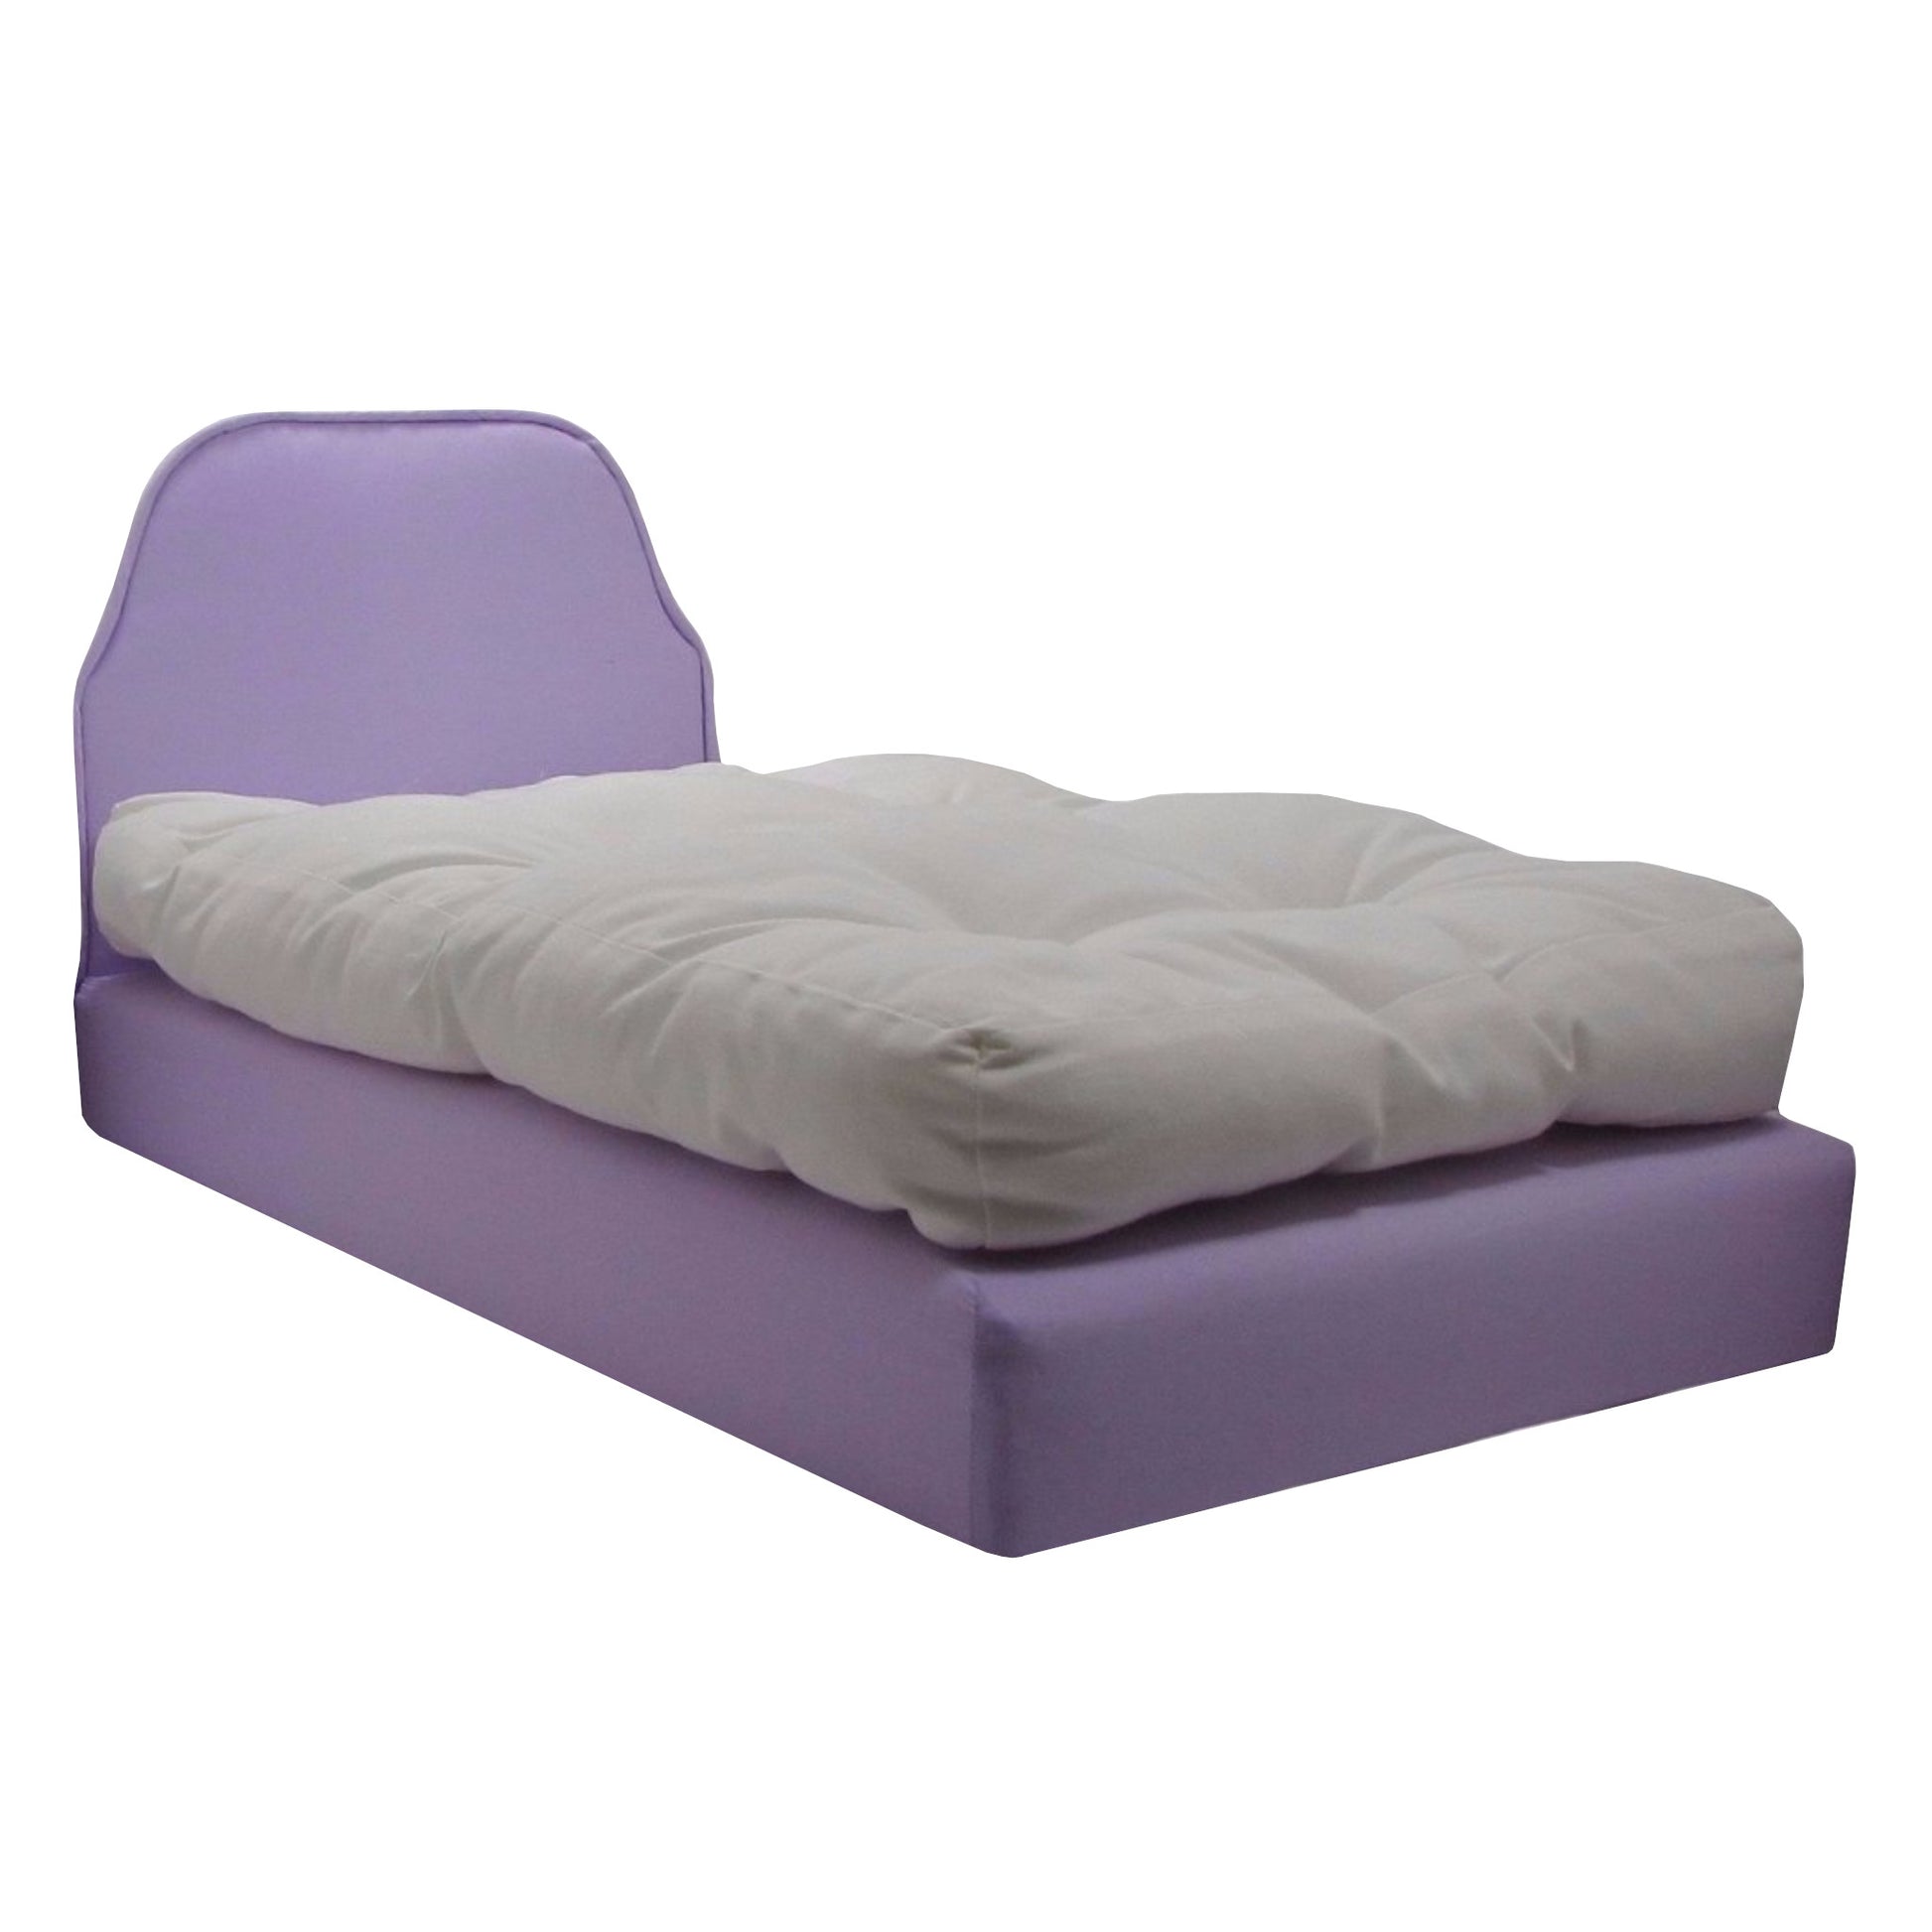 Upholstered Lavender Doll Bed for 18-inch dolls